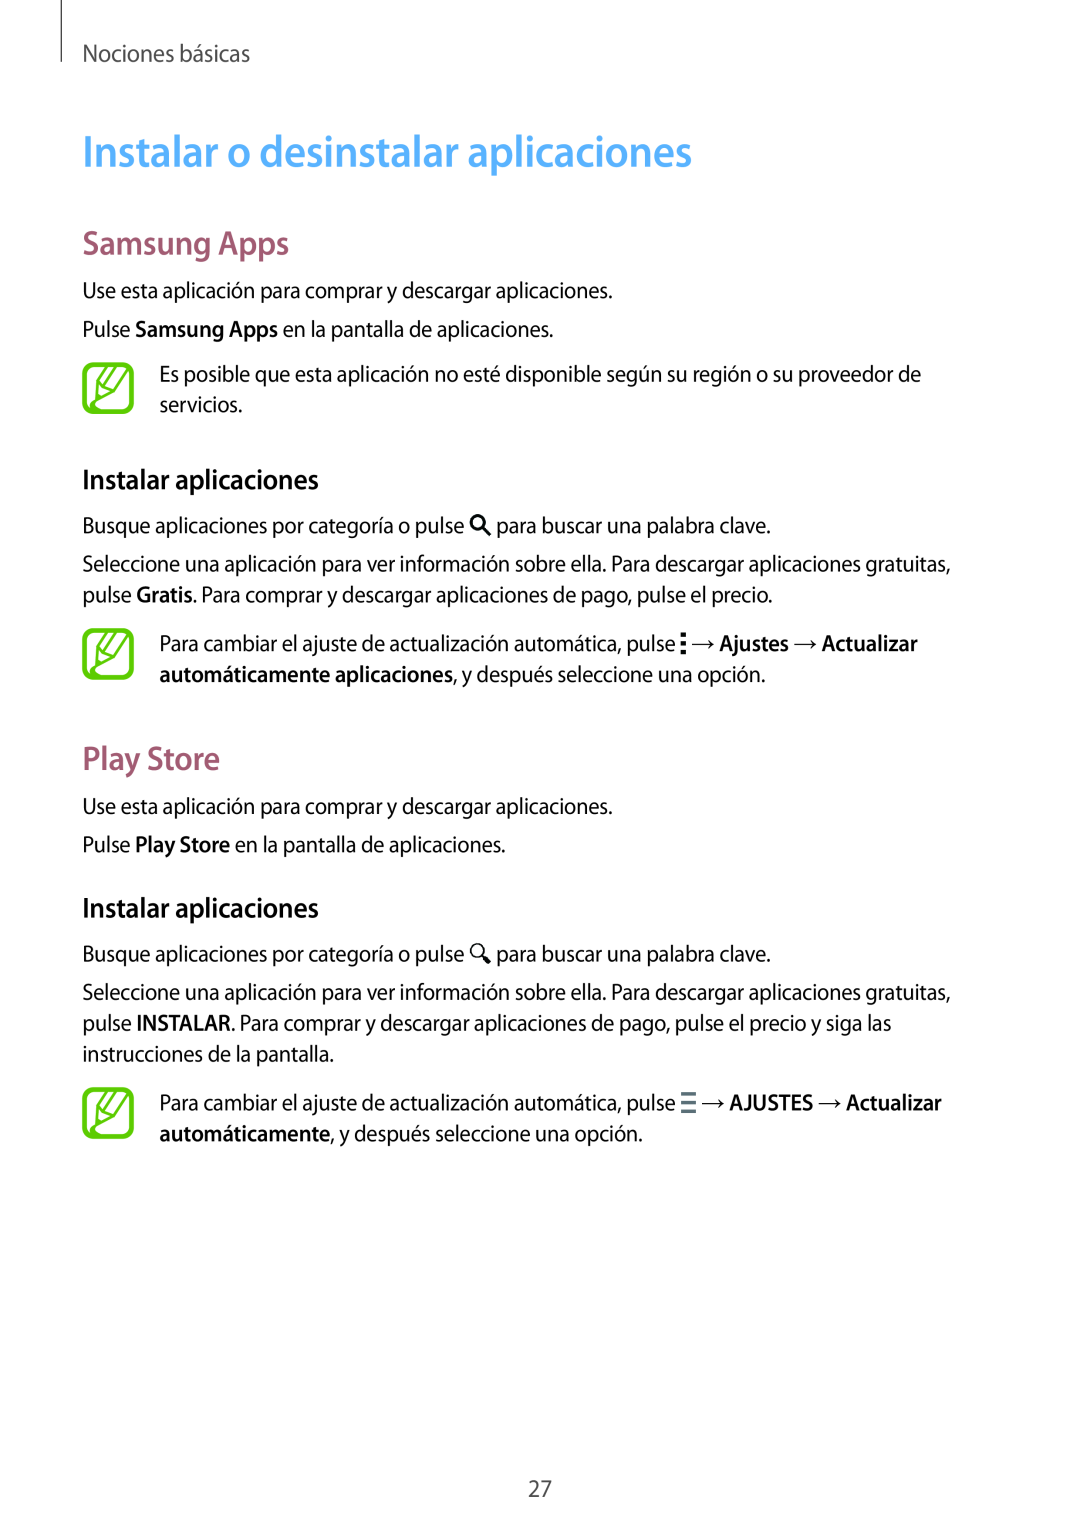 Samsung SM-T700NTSATPH manual Instalar o desinstalar aplicaciones, Samsung Apps, Play Store, Instalar aplicaciones 